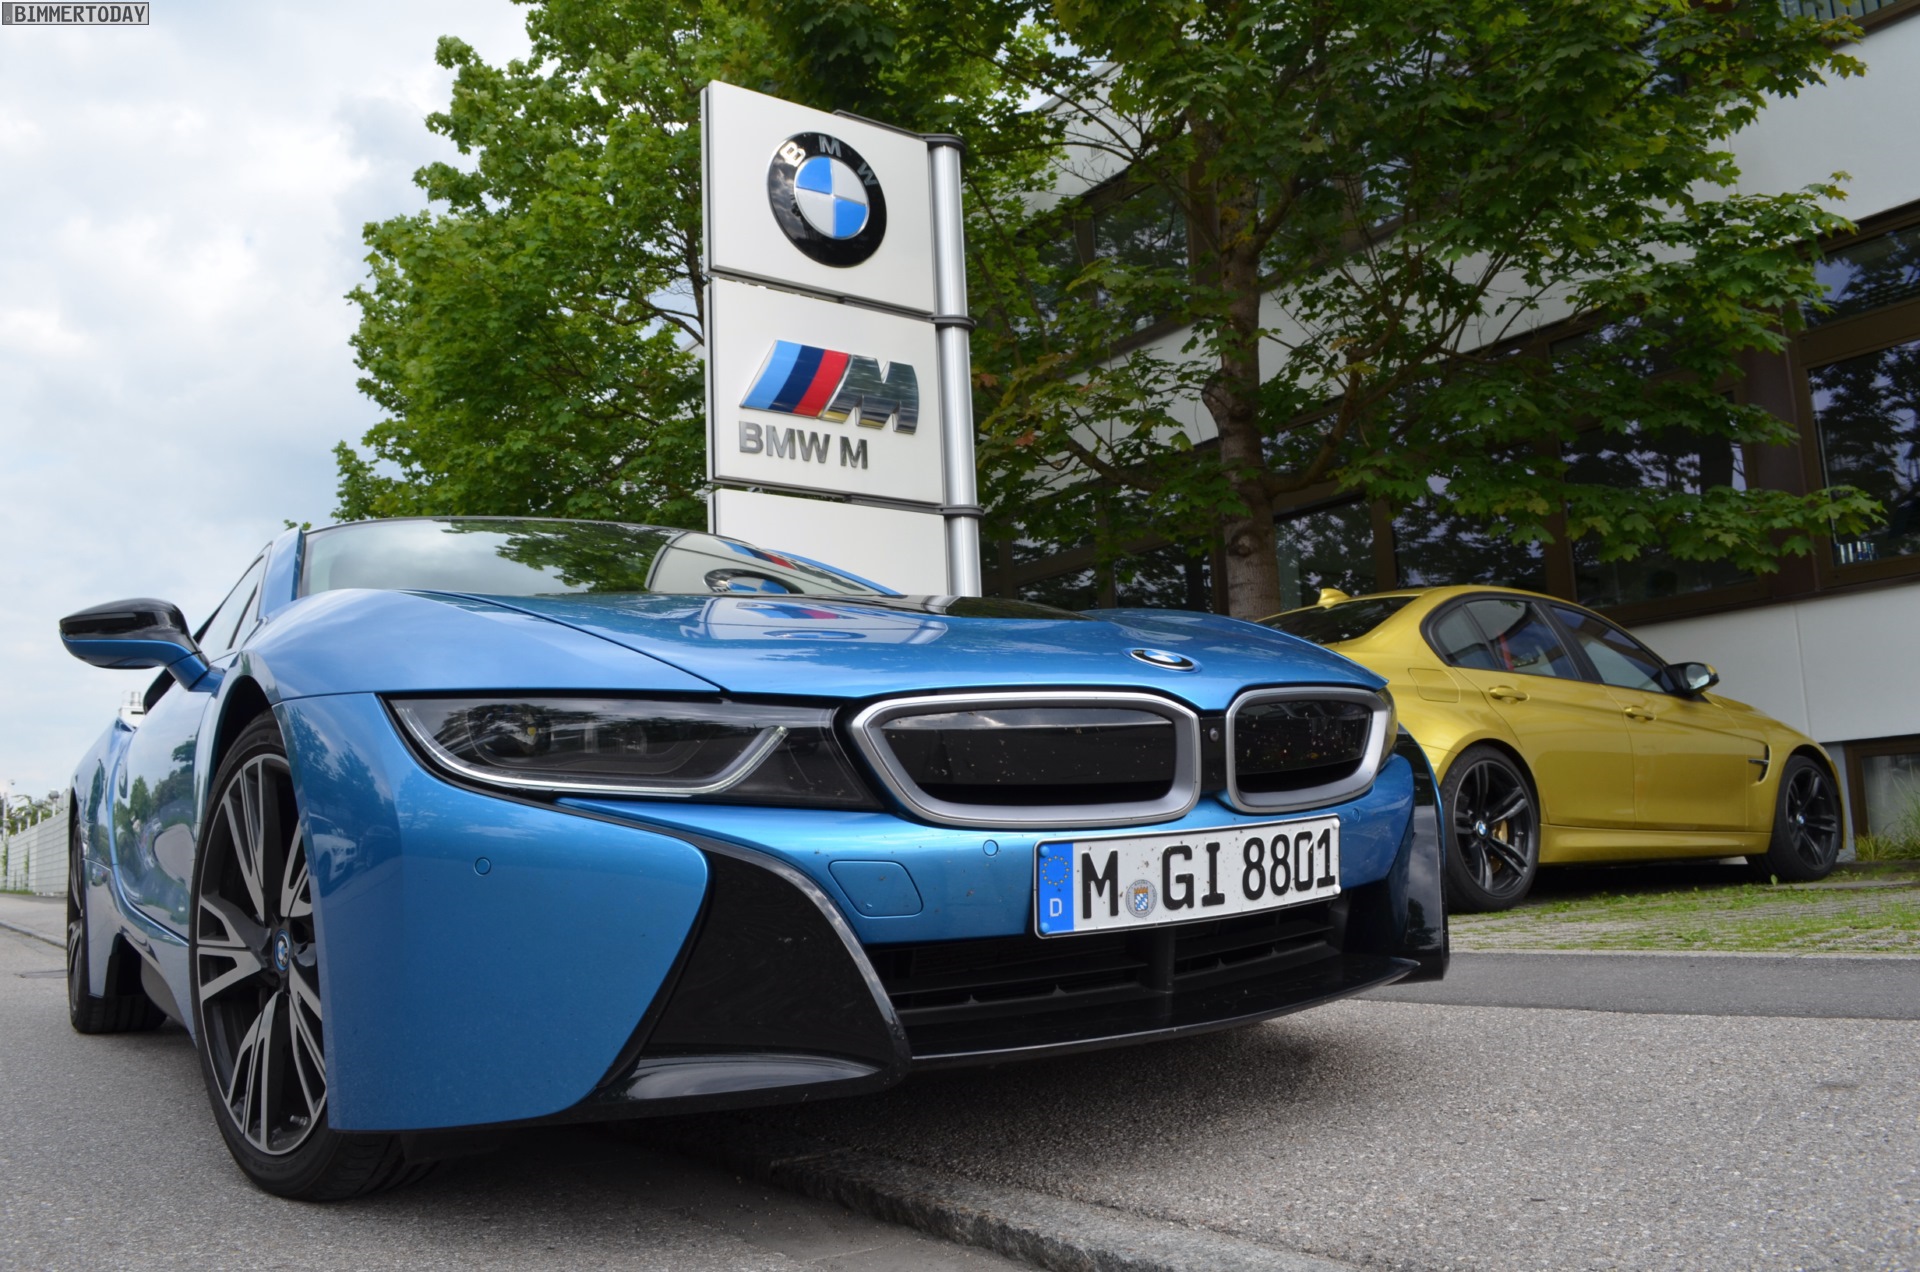 BMW-M-Hybrid-Sportwagen-mit-i-Technik-wird-wahrscheinlicher